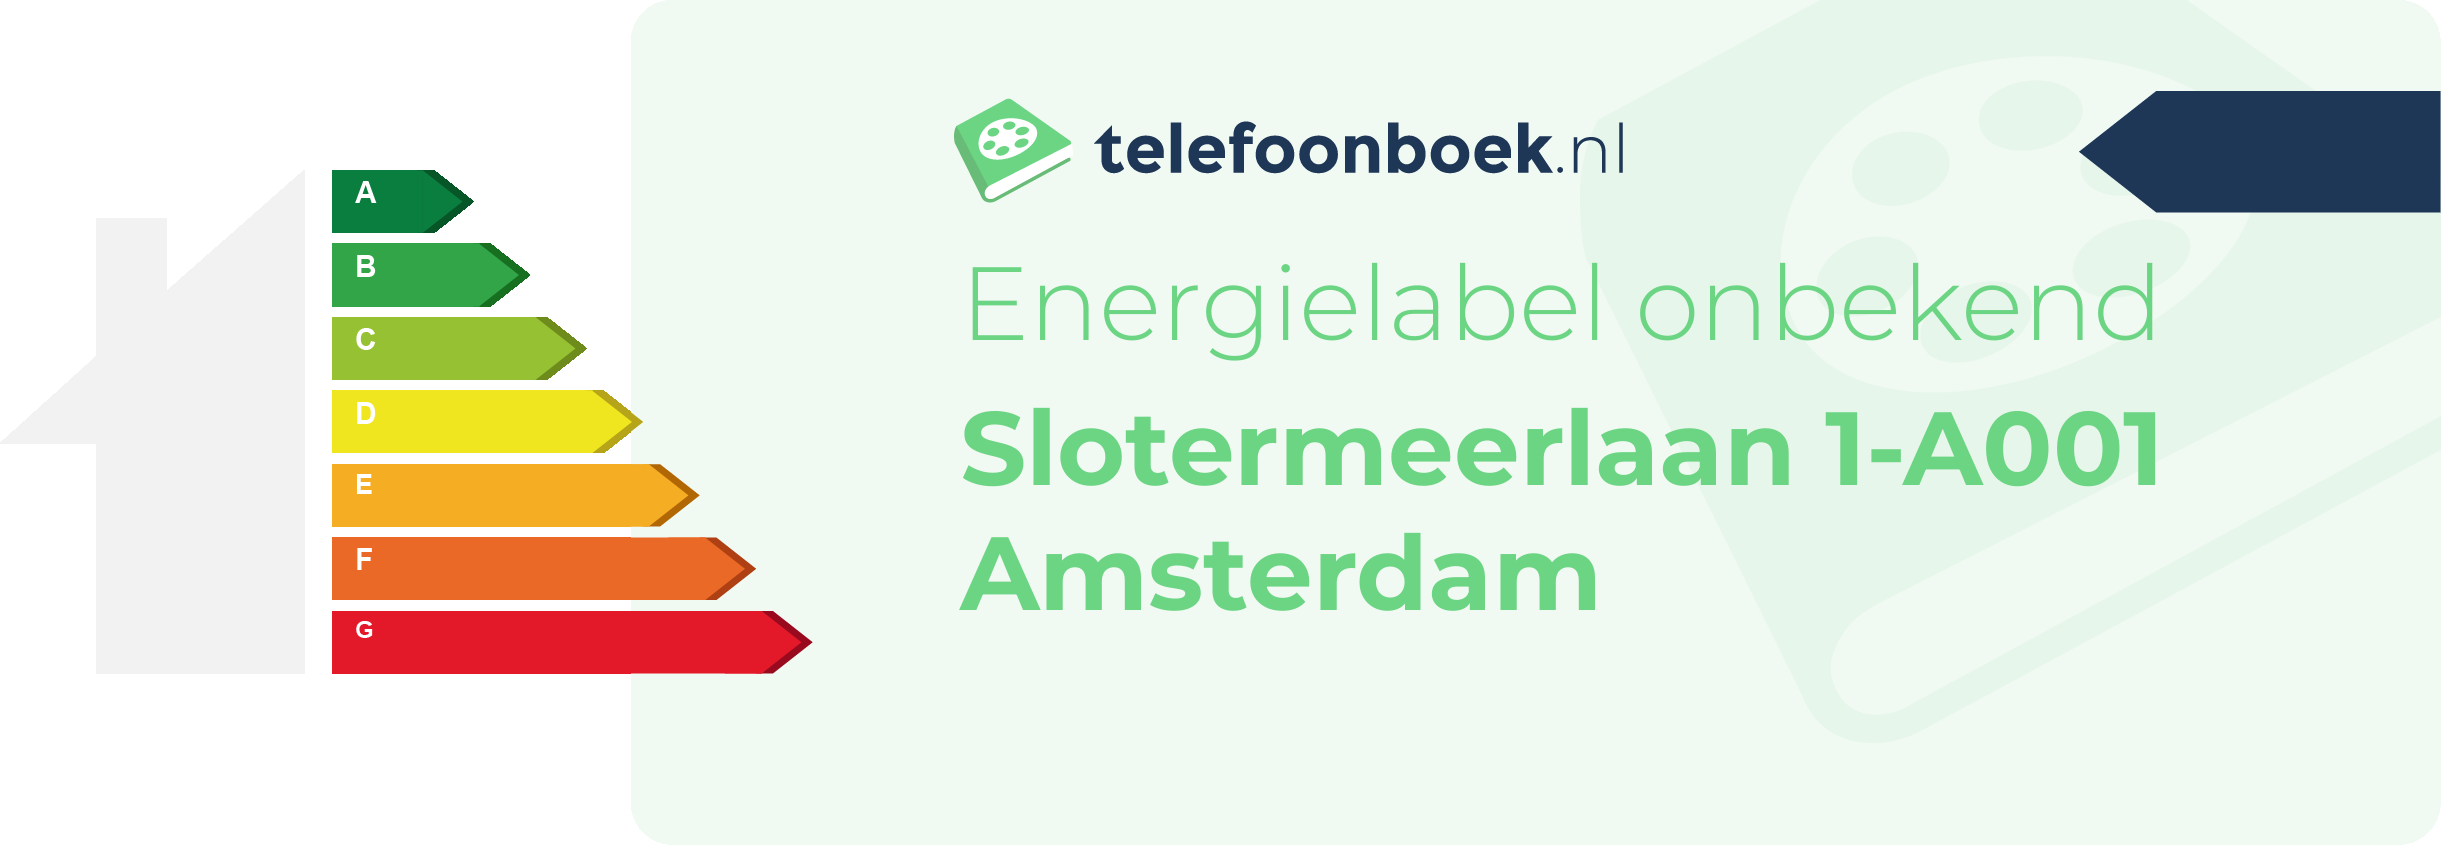 Energielabel Slotermeerlaan 1-A001 Amsterdam